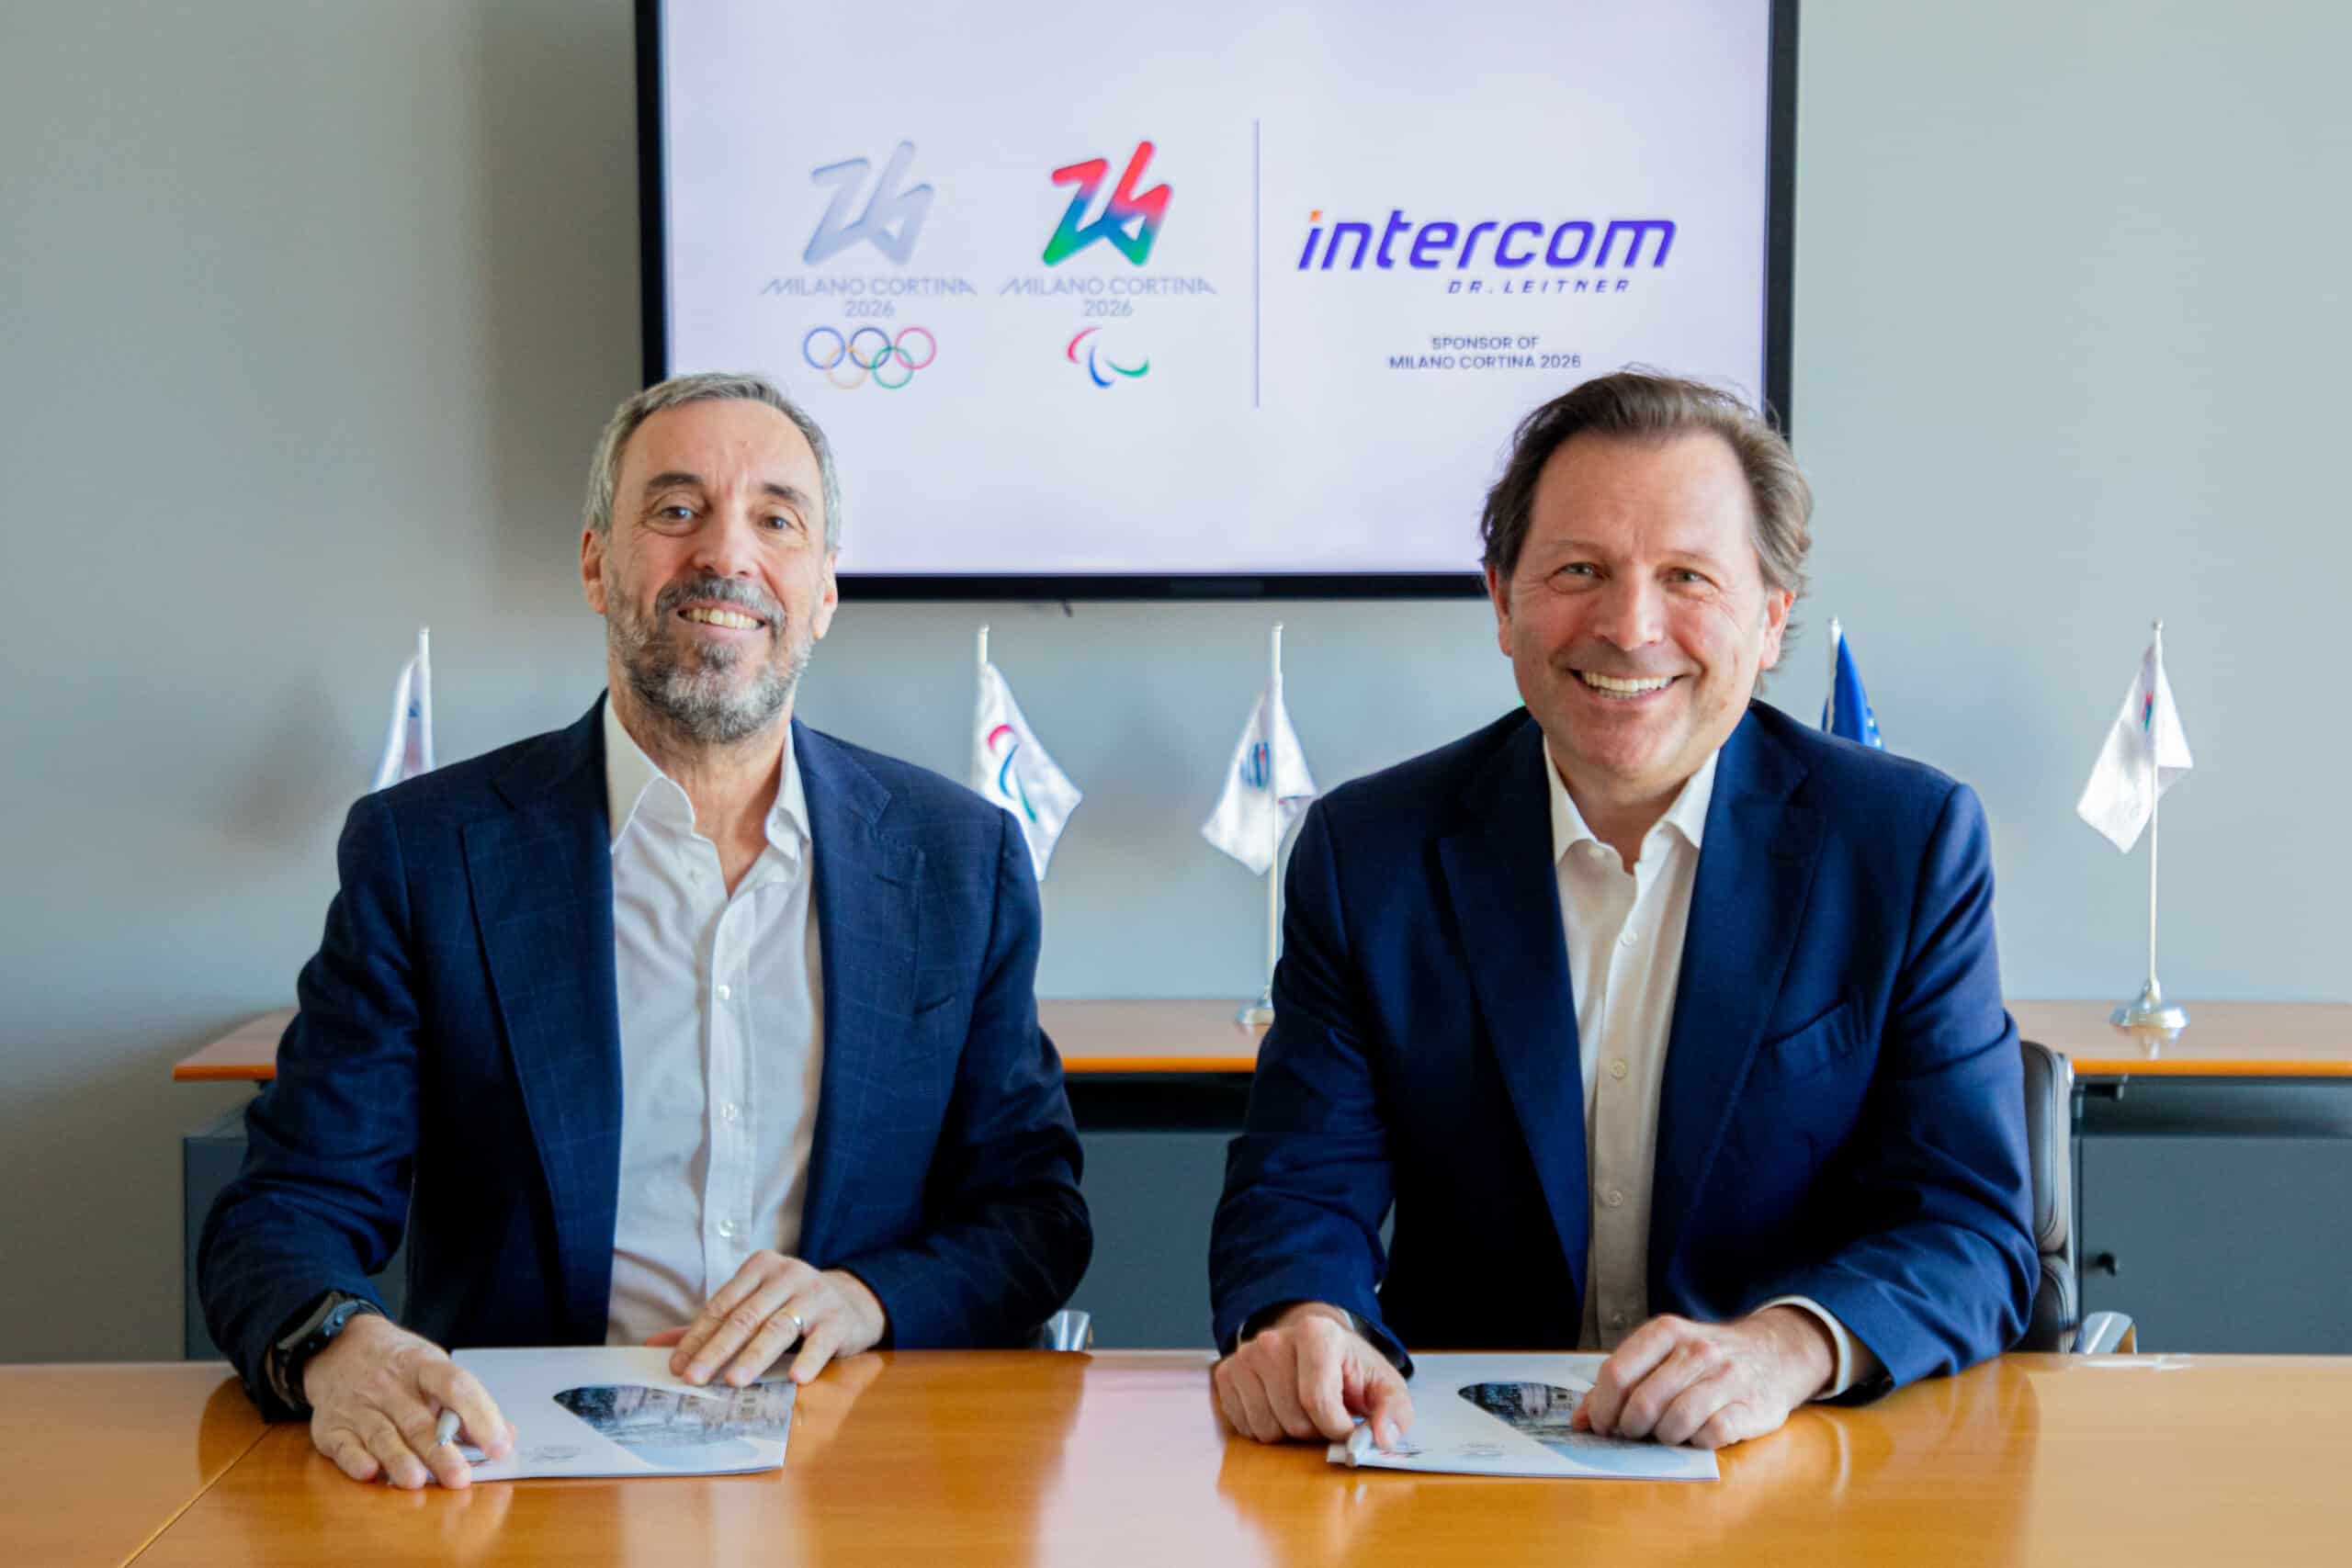 🇮🇹 Offizieller Partner der Olympischen Winterspiele 2026 in Milano Cortina